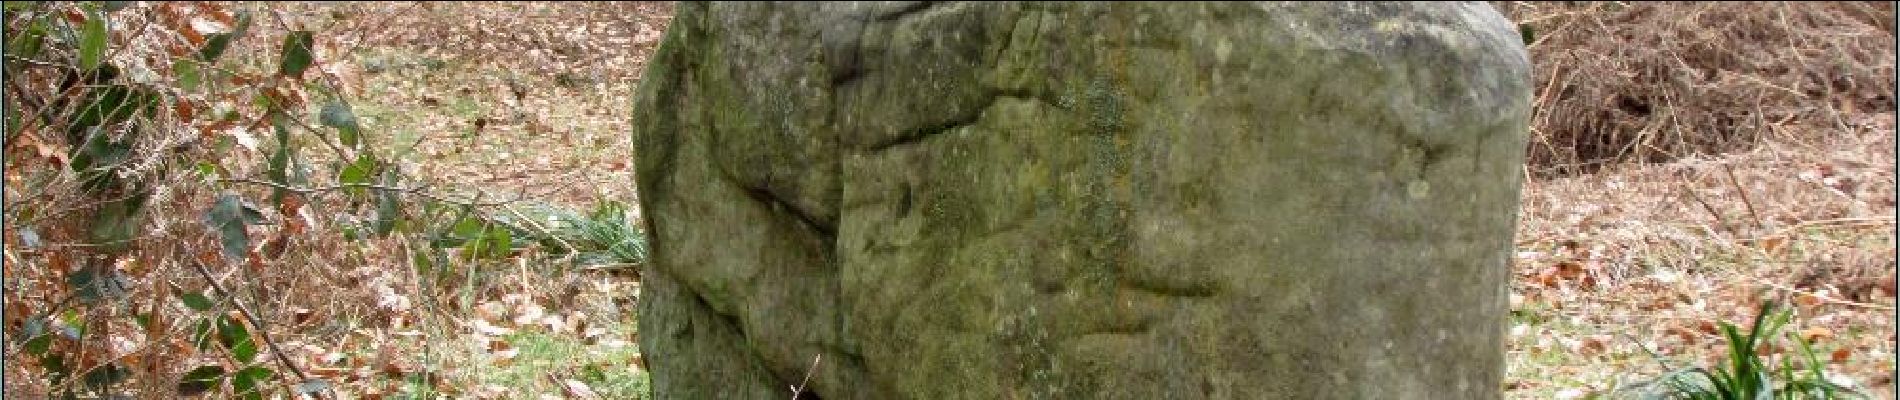 POI Villers-Saint-Frambourg-Ognon - le dolmen de Chancy - Photo